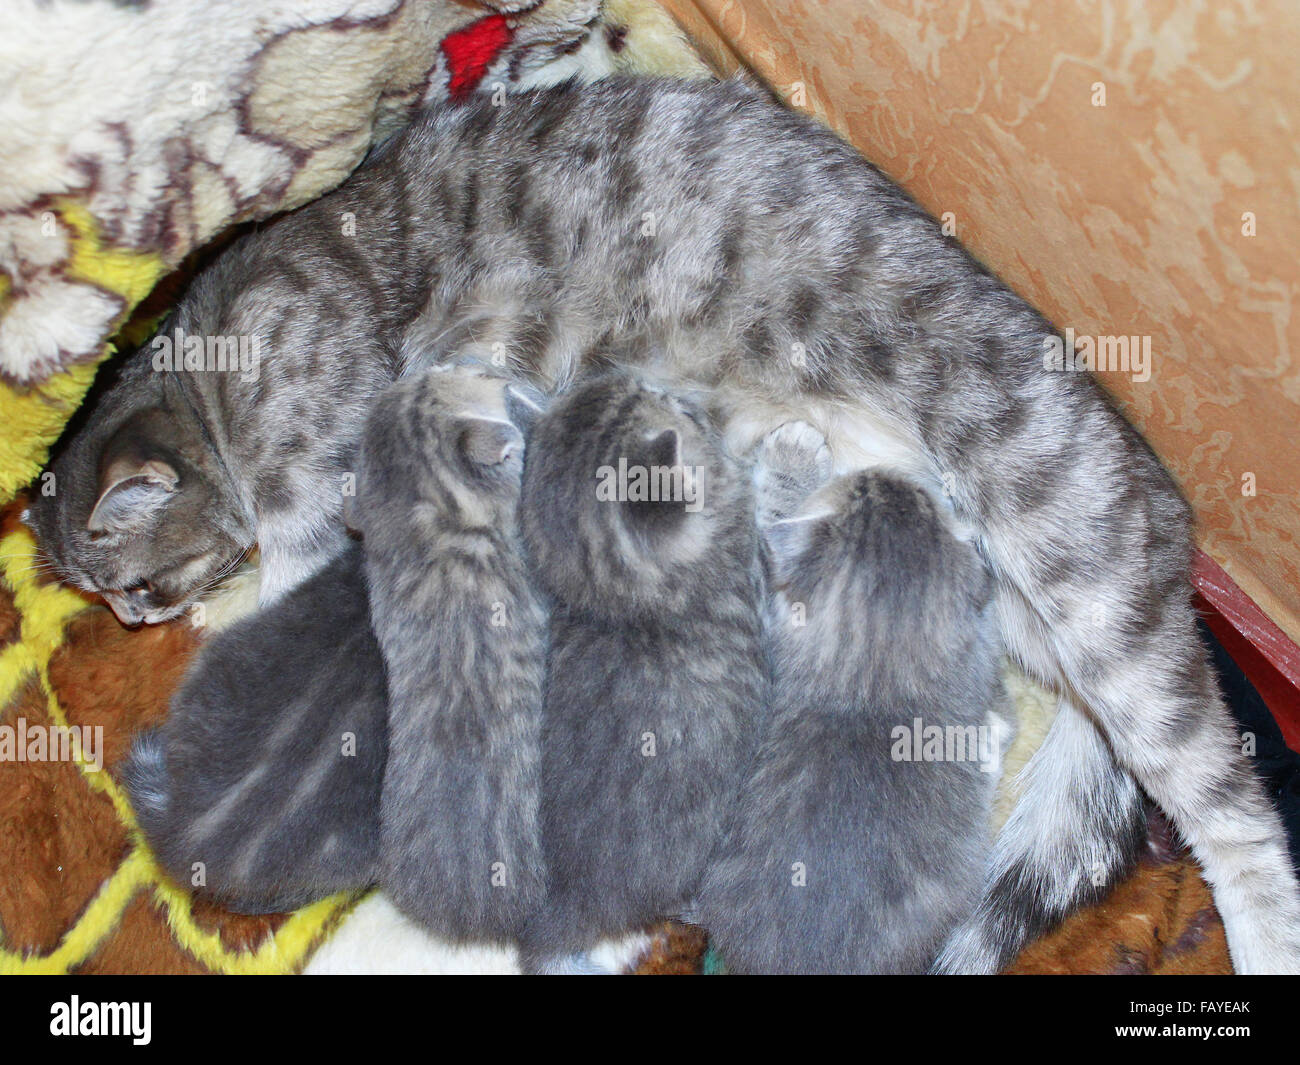 cat and her newborn kittens of Scottish Straight breed Stock Photo